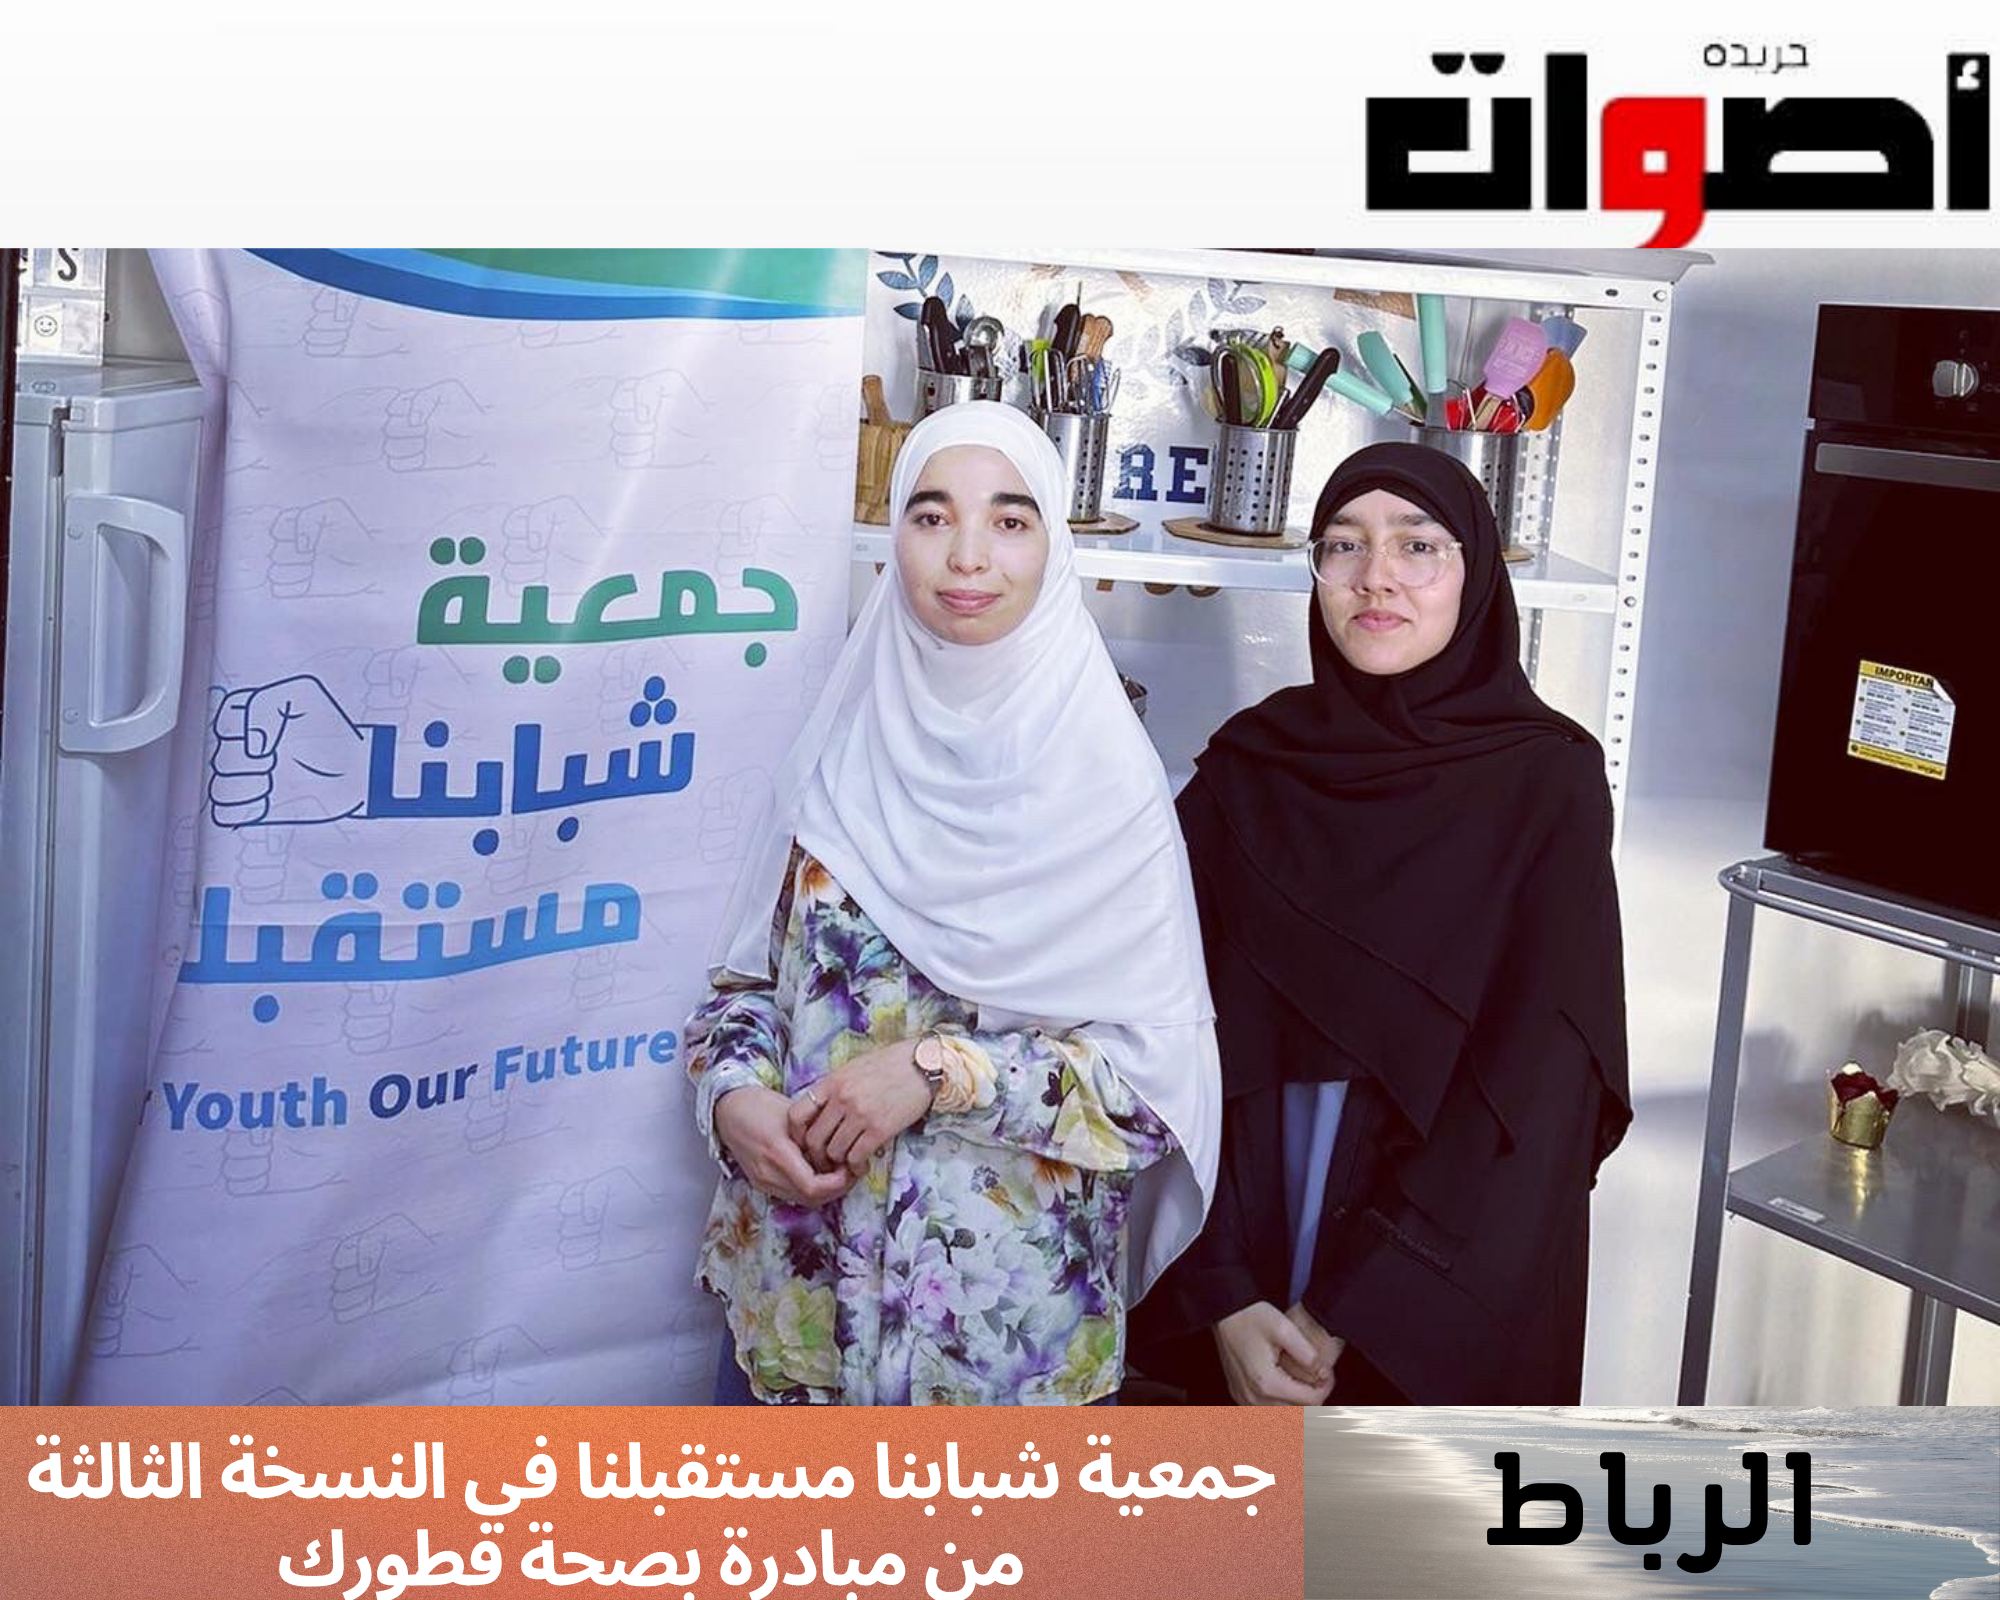 الرباط: جمعية شبابنا مستقبلنا في النسخة الثالثة من مبادرة بصحة فطورك